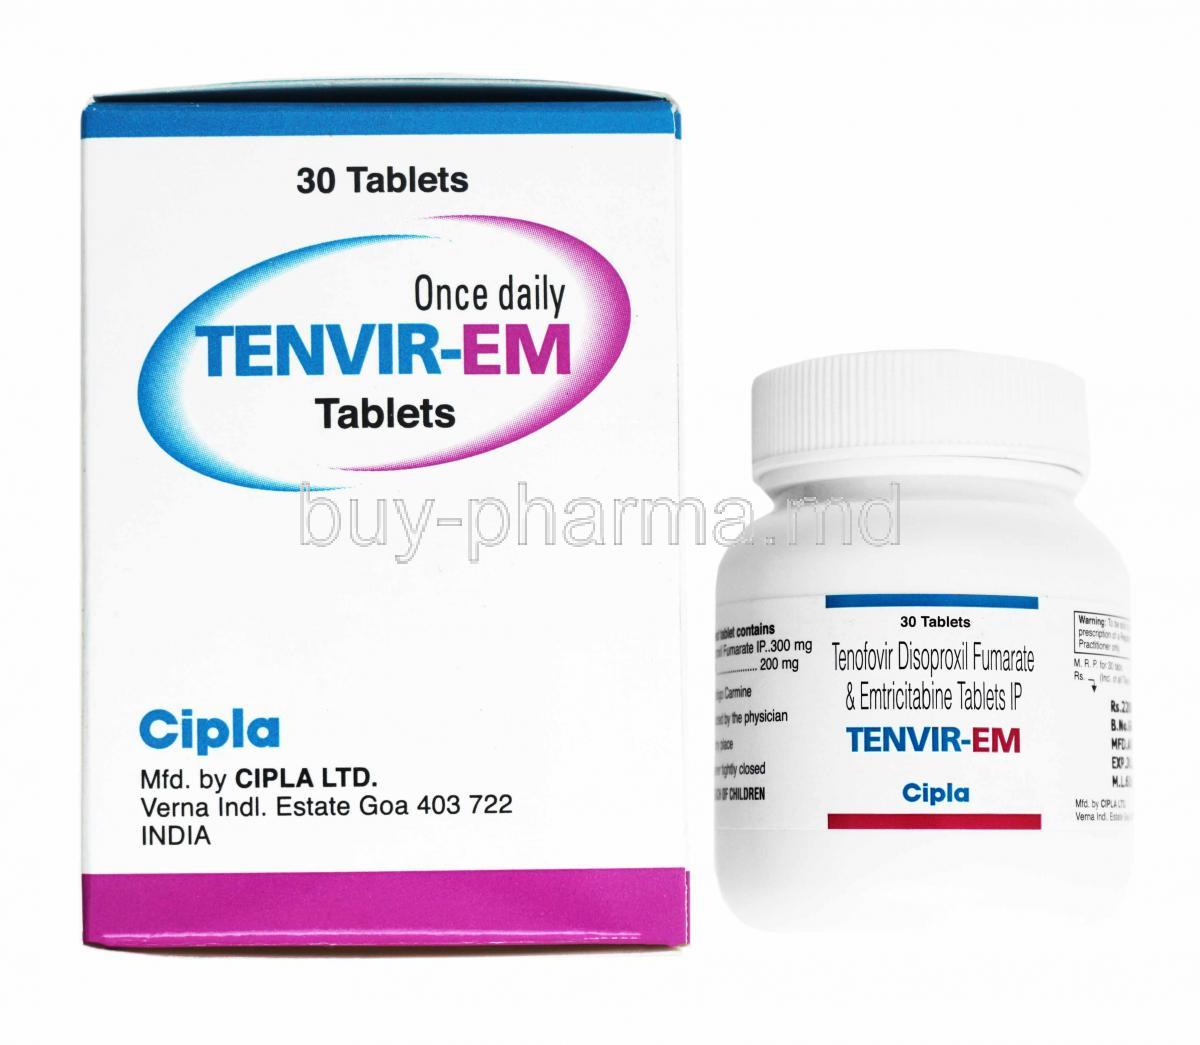 Tenvir-EM, Emtricitabine and Tenofovir disoproxil fumarate box and bottle